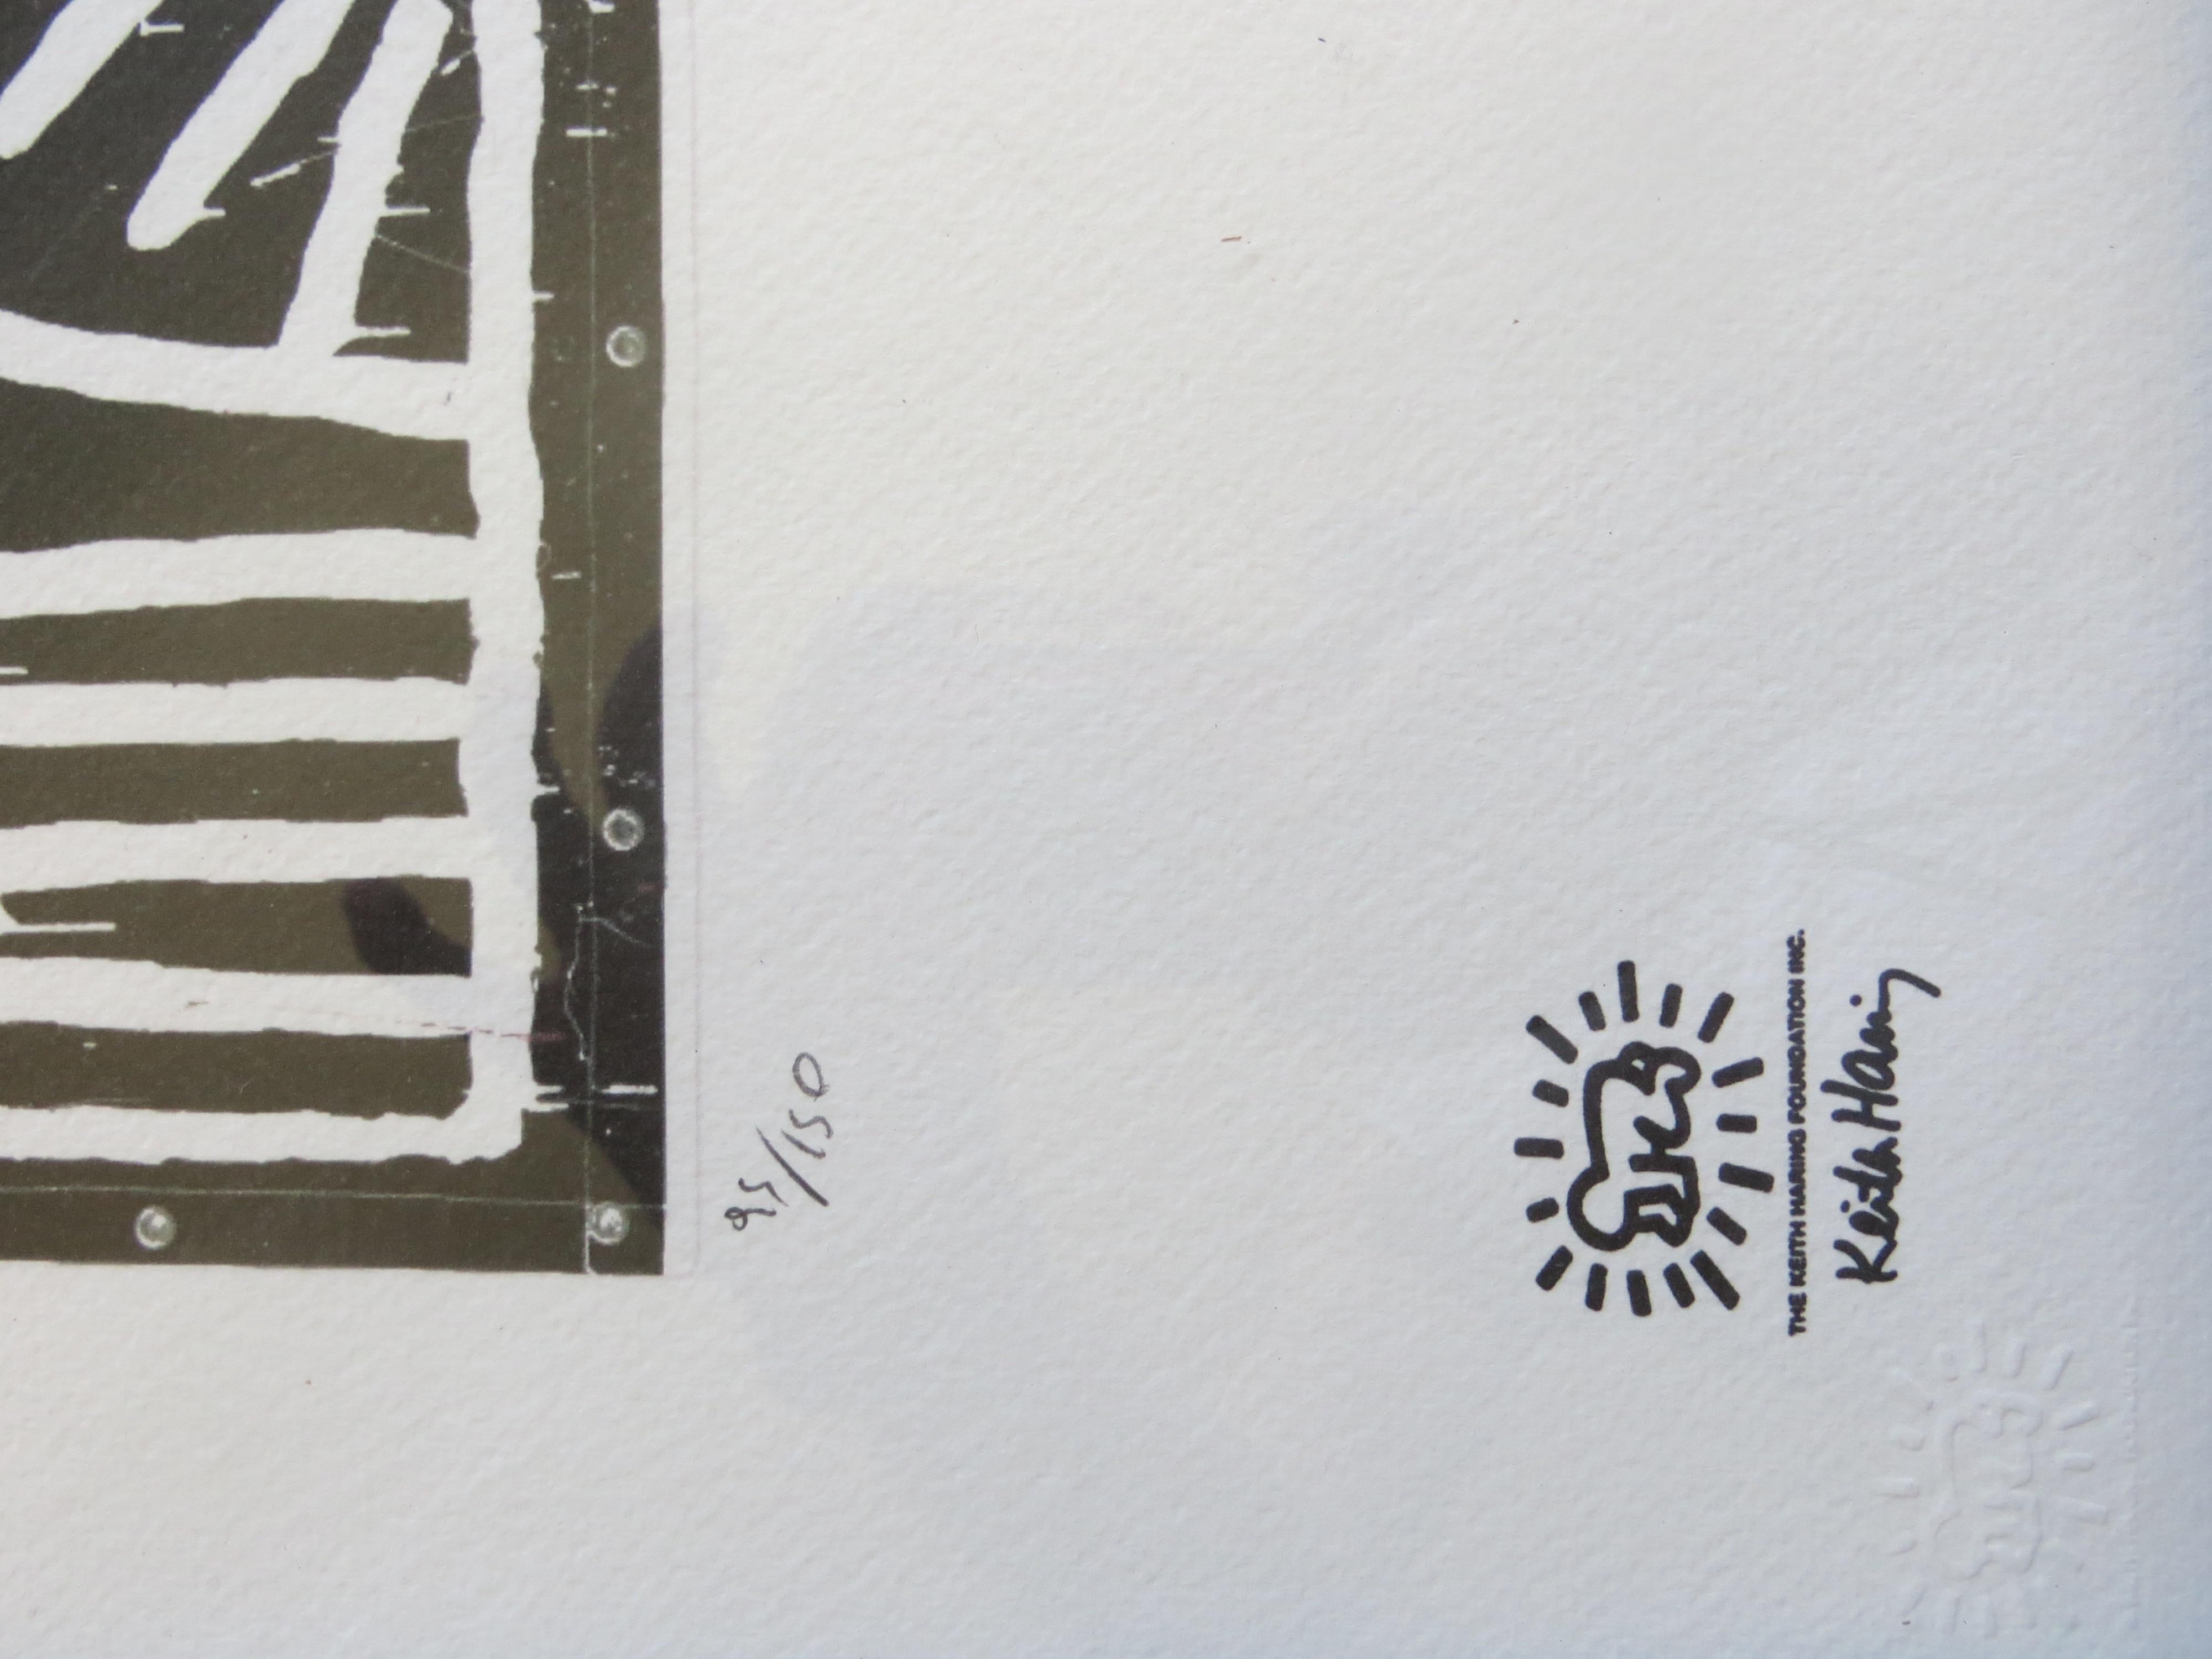 D'après Keith Haring, édition limitée à 95/150 exemplaires
Œuvre d'art lithographiée par la Fondation Keith Haring, numérotée avec un cachet en relief.
L'image présente le célèbre artiste pop américain et activiste social Keith Haring dans une